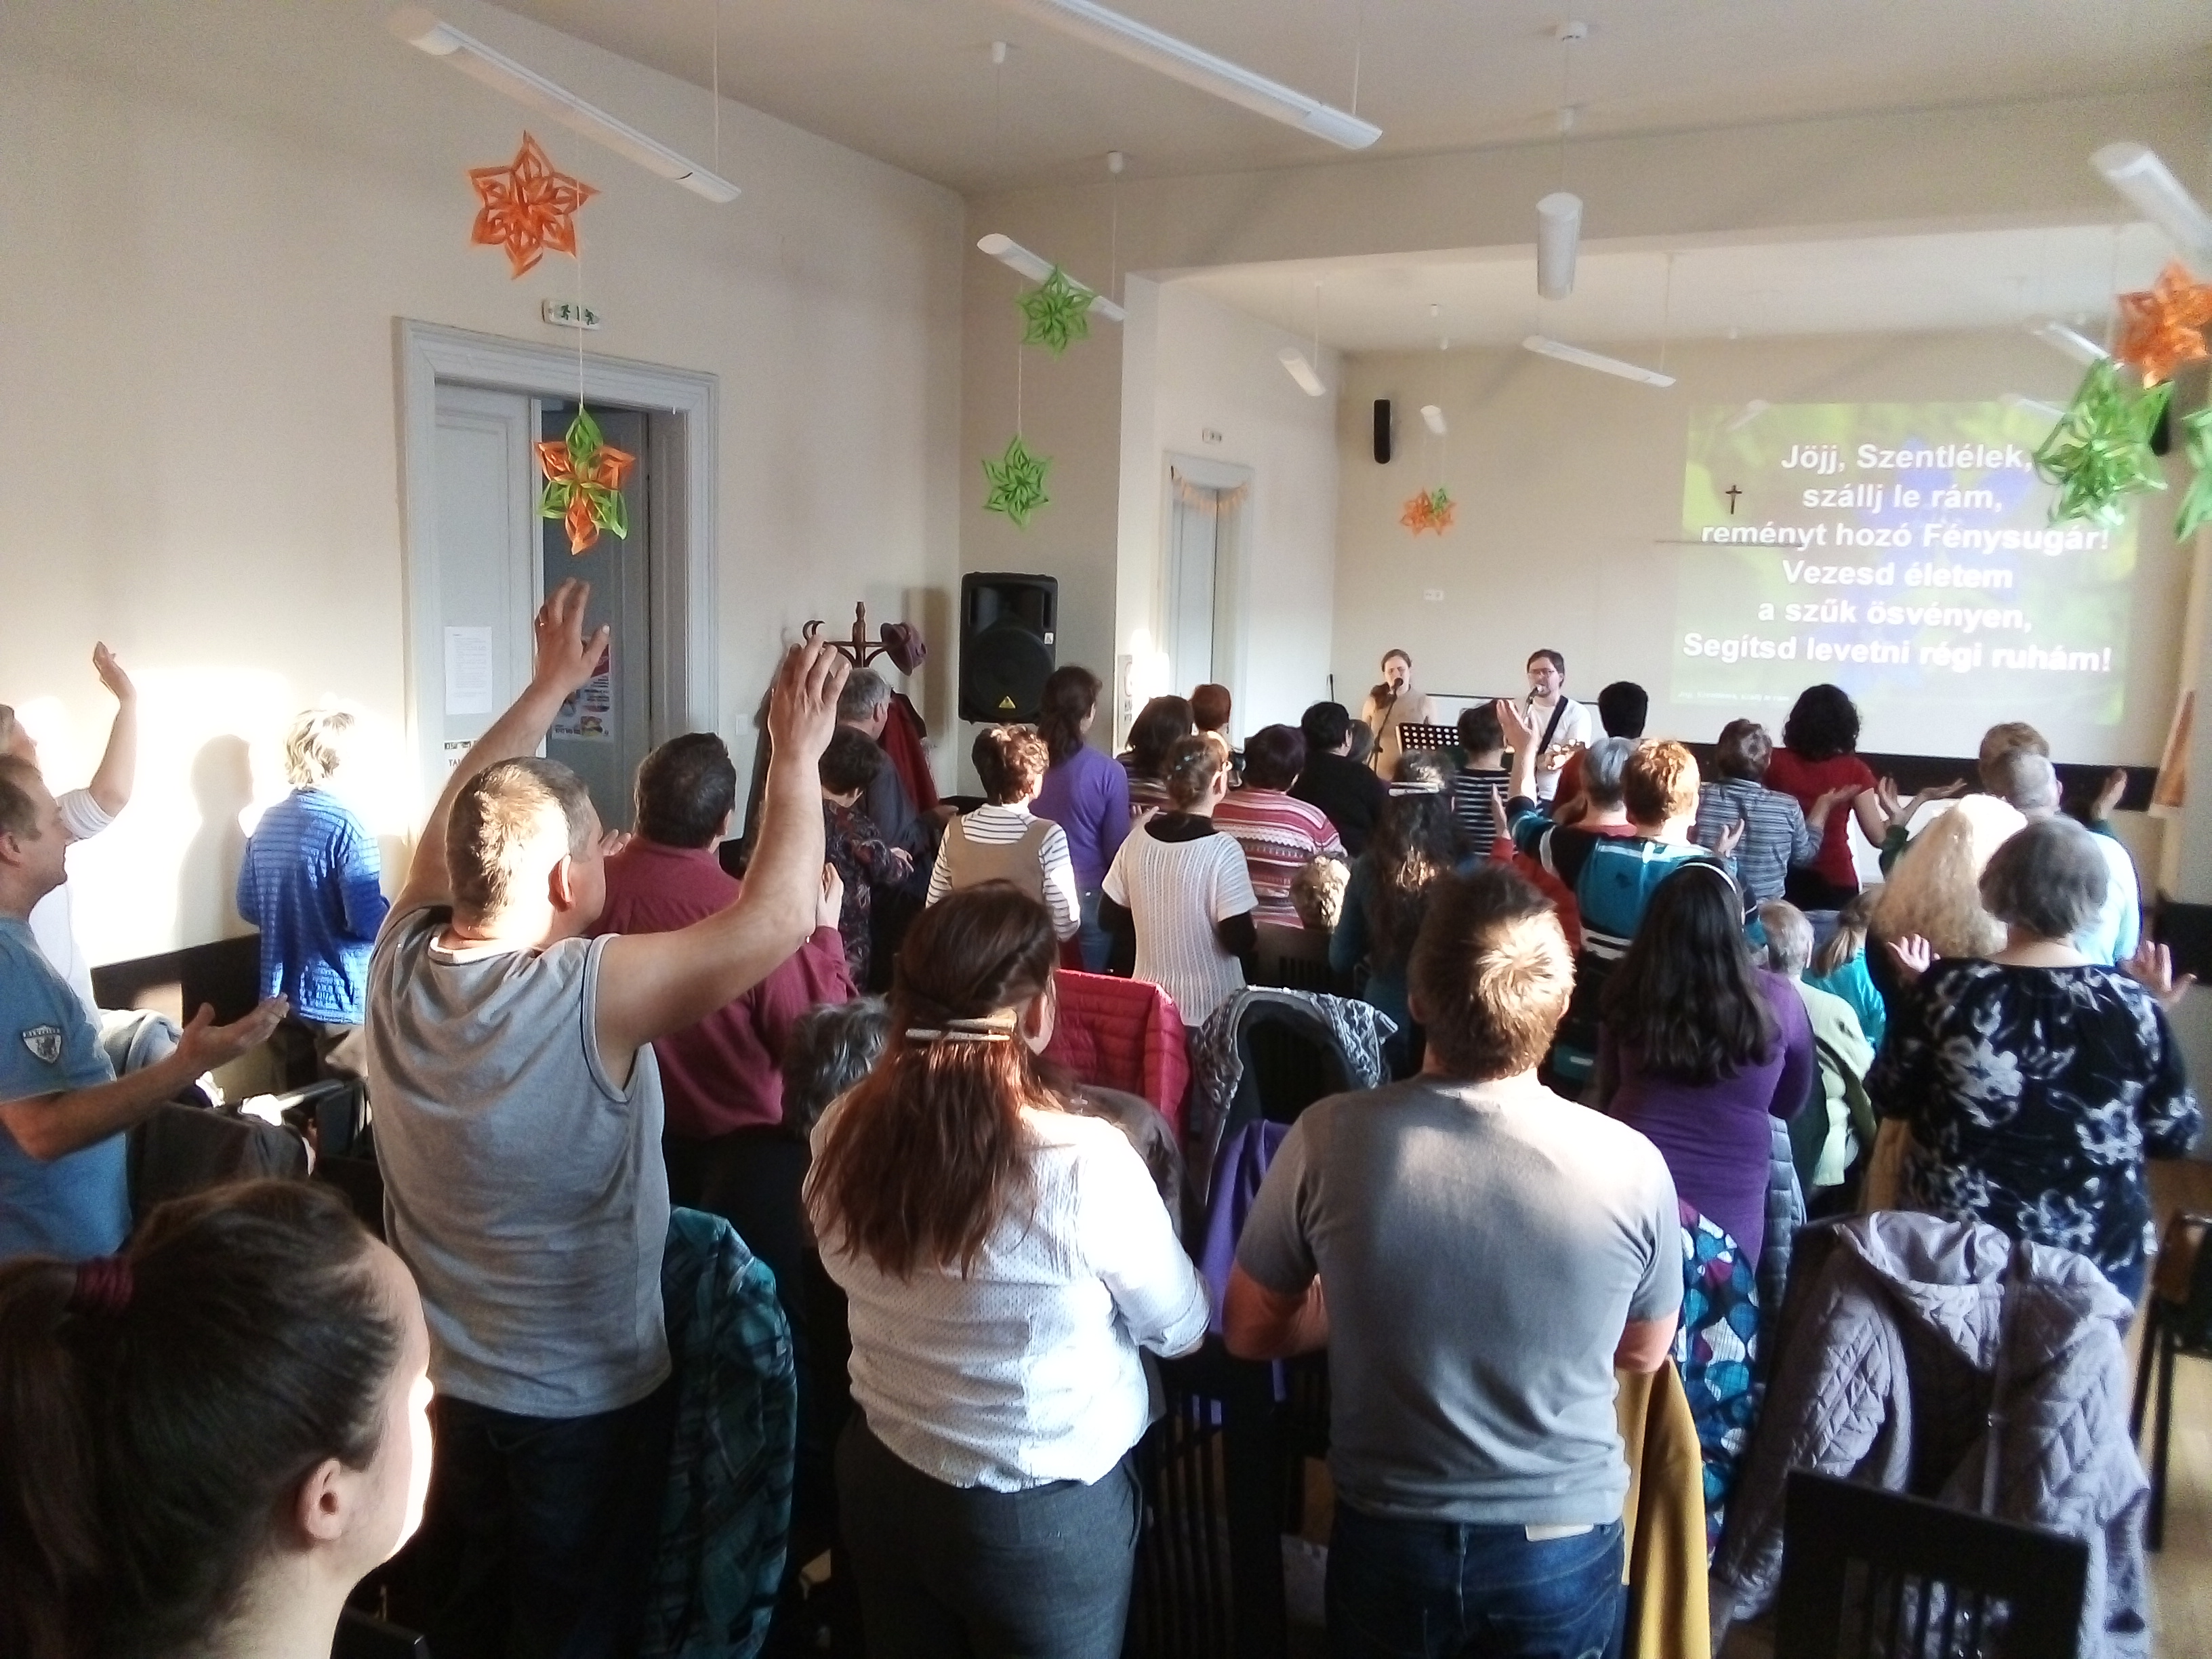 Adventi lelkinapok az egészségügyben dolgozóknak: Megerősödni az Isten és egymás iránti szeretetben